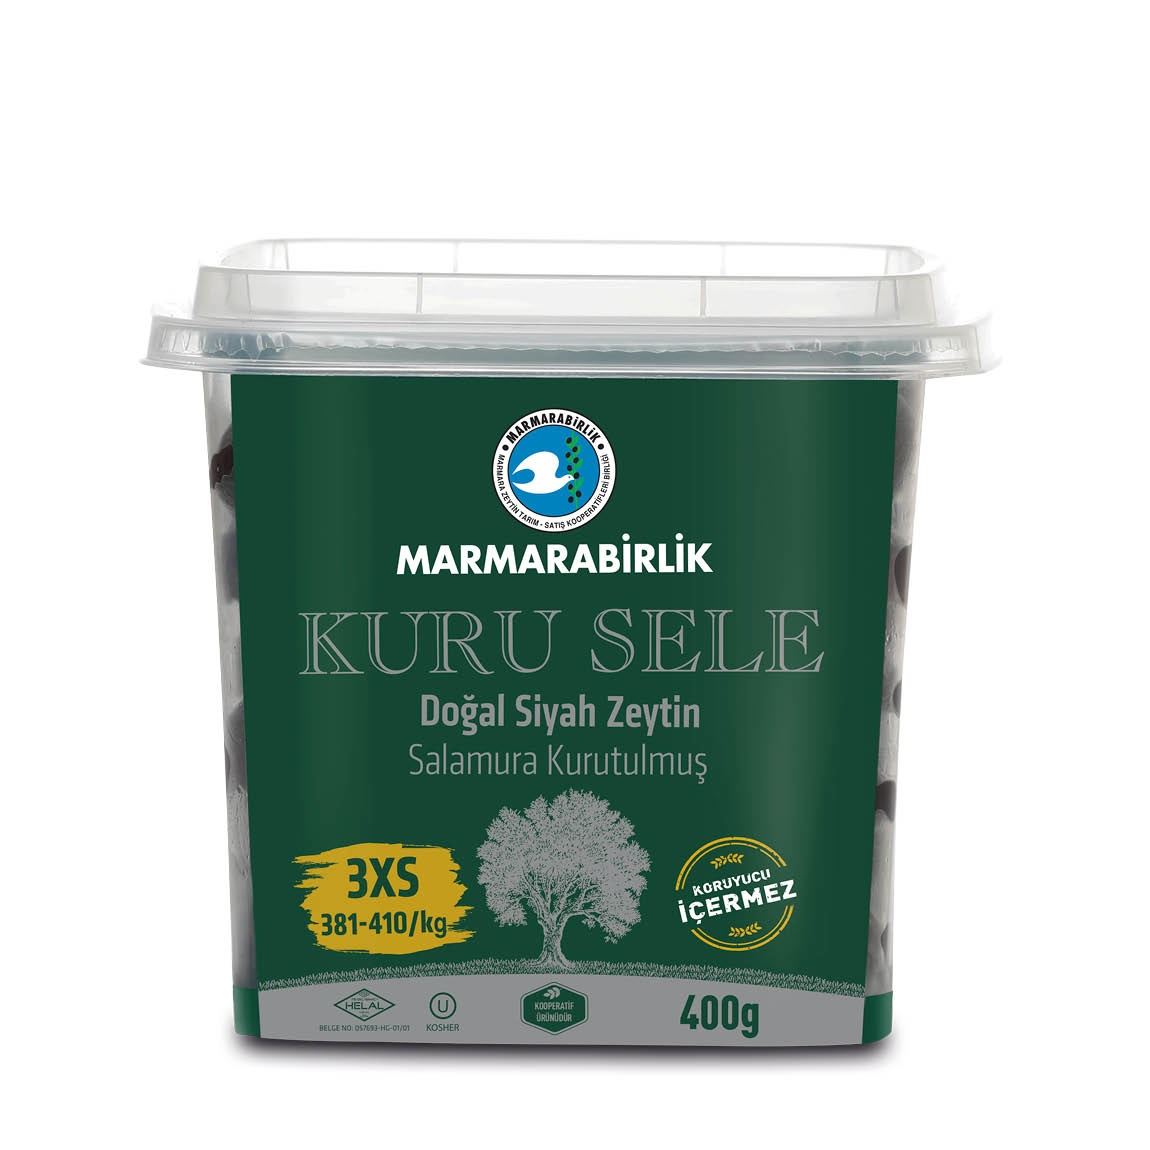 Marmarabirlik Oliven schwarz - Kuru Sele 3XS 400g